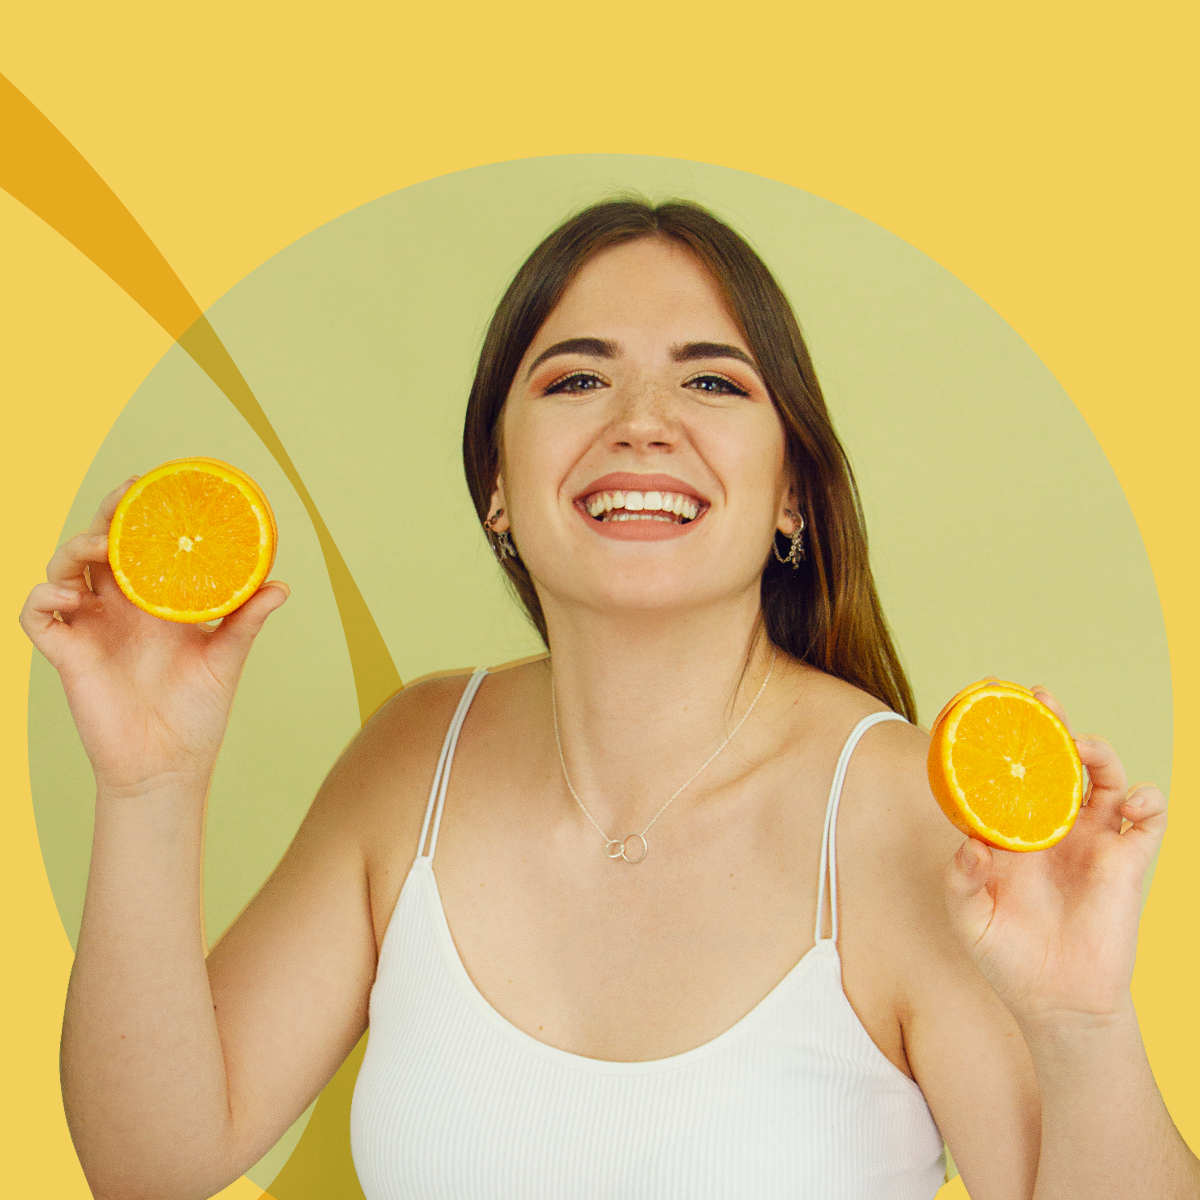 Strahlende junge Frau, die Orangenscheiben hält und lächelt, umgeben von einem warmen gelben Kreis, symbolisch für Frische und Vitamine.